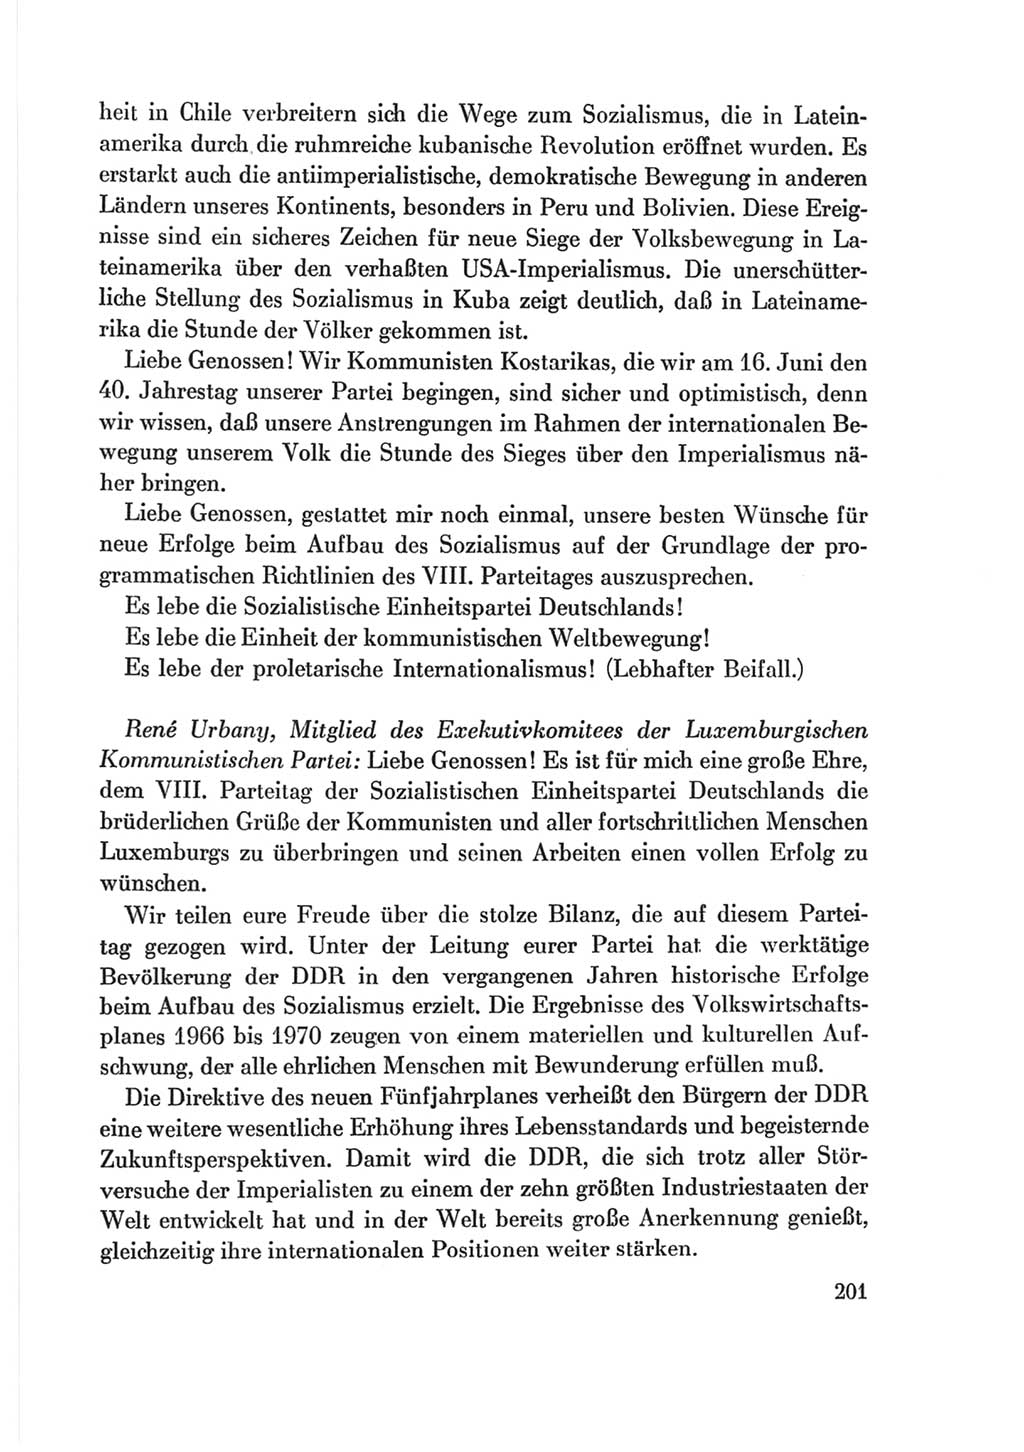 Protokoll der Verhandlungen des Ⅷ. Parteitages der Sozialistischen Einheitspartei Deutschlands (SED) [Deutsche Demokratische Republik (DDR)] 1971, Band 2, Seite 201 (Prot. Verh. Ⅷ. PT SED DDR 1971, Bd. 2, S. 201)